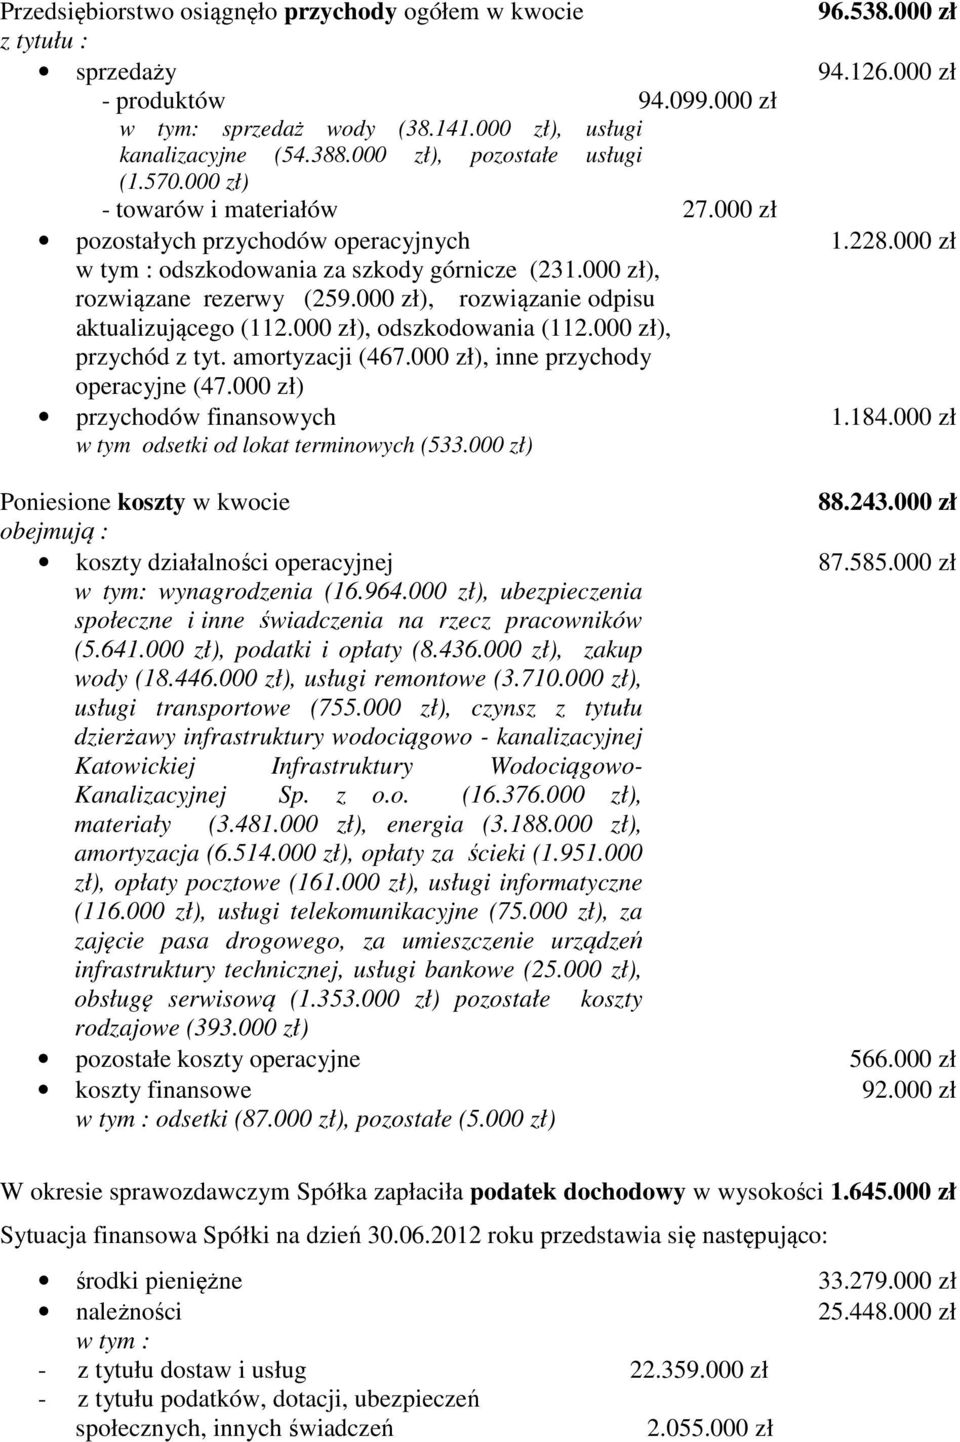 000 zł), rozwiązane rezerwy (259.000 zł), rozwiązanie odpisu aktualizującego (112.000 zł), odszkodowania (112.000 zł), przychód z tyt. amortyzacji (467.000 zł), inne przychody operacyjne (47.